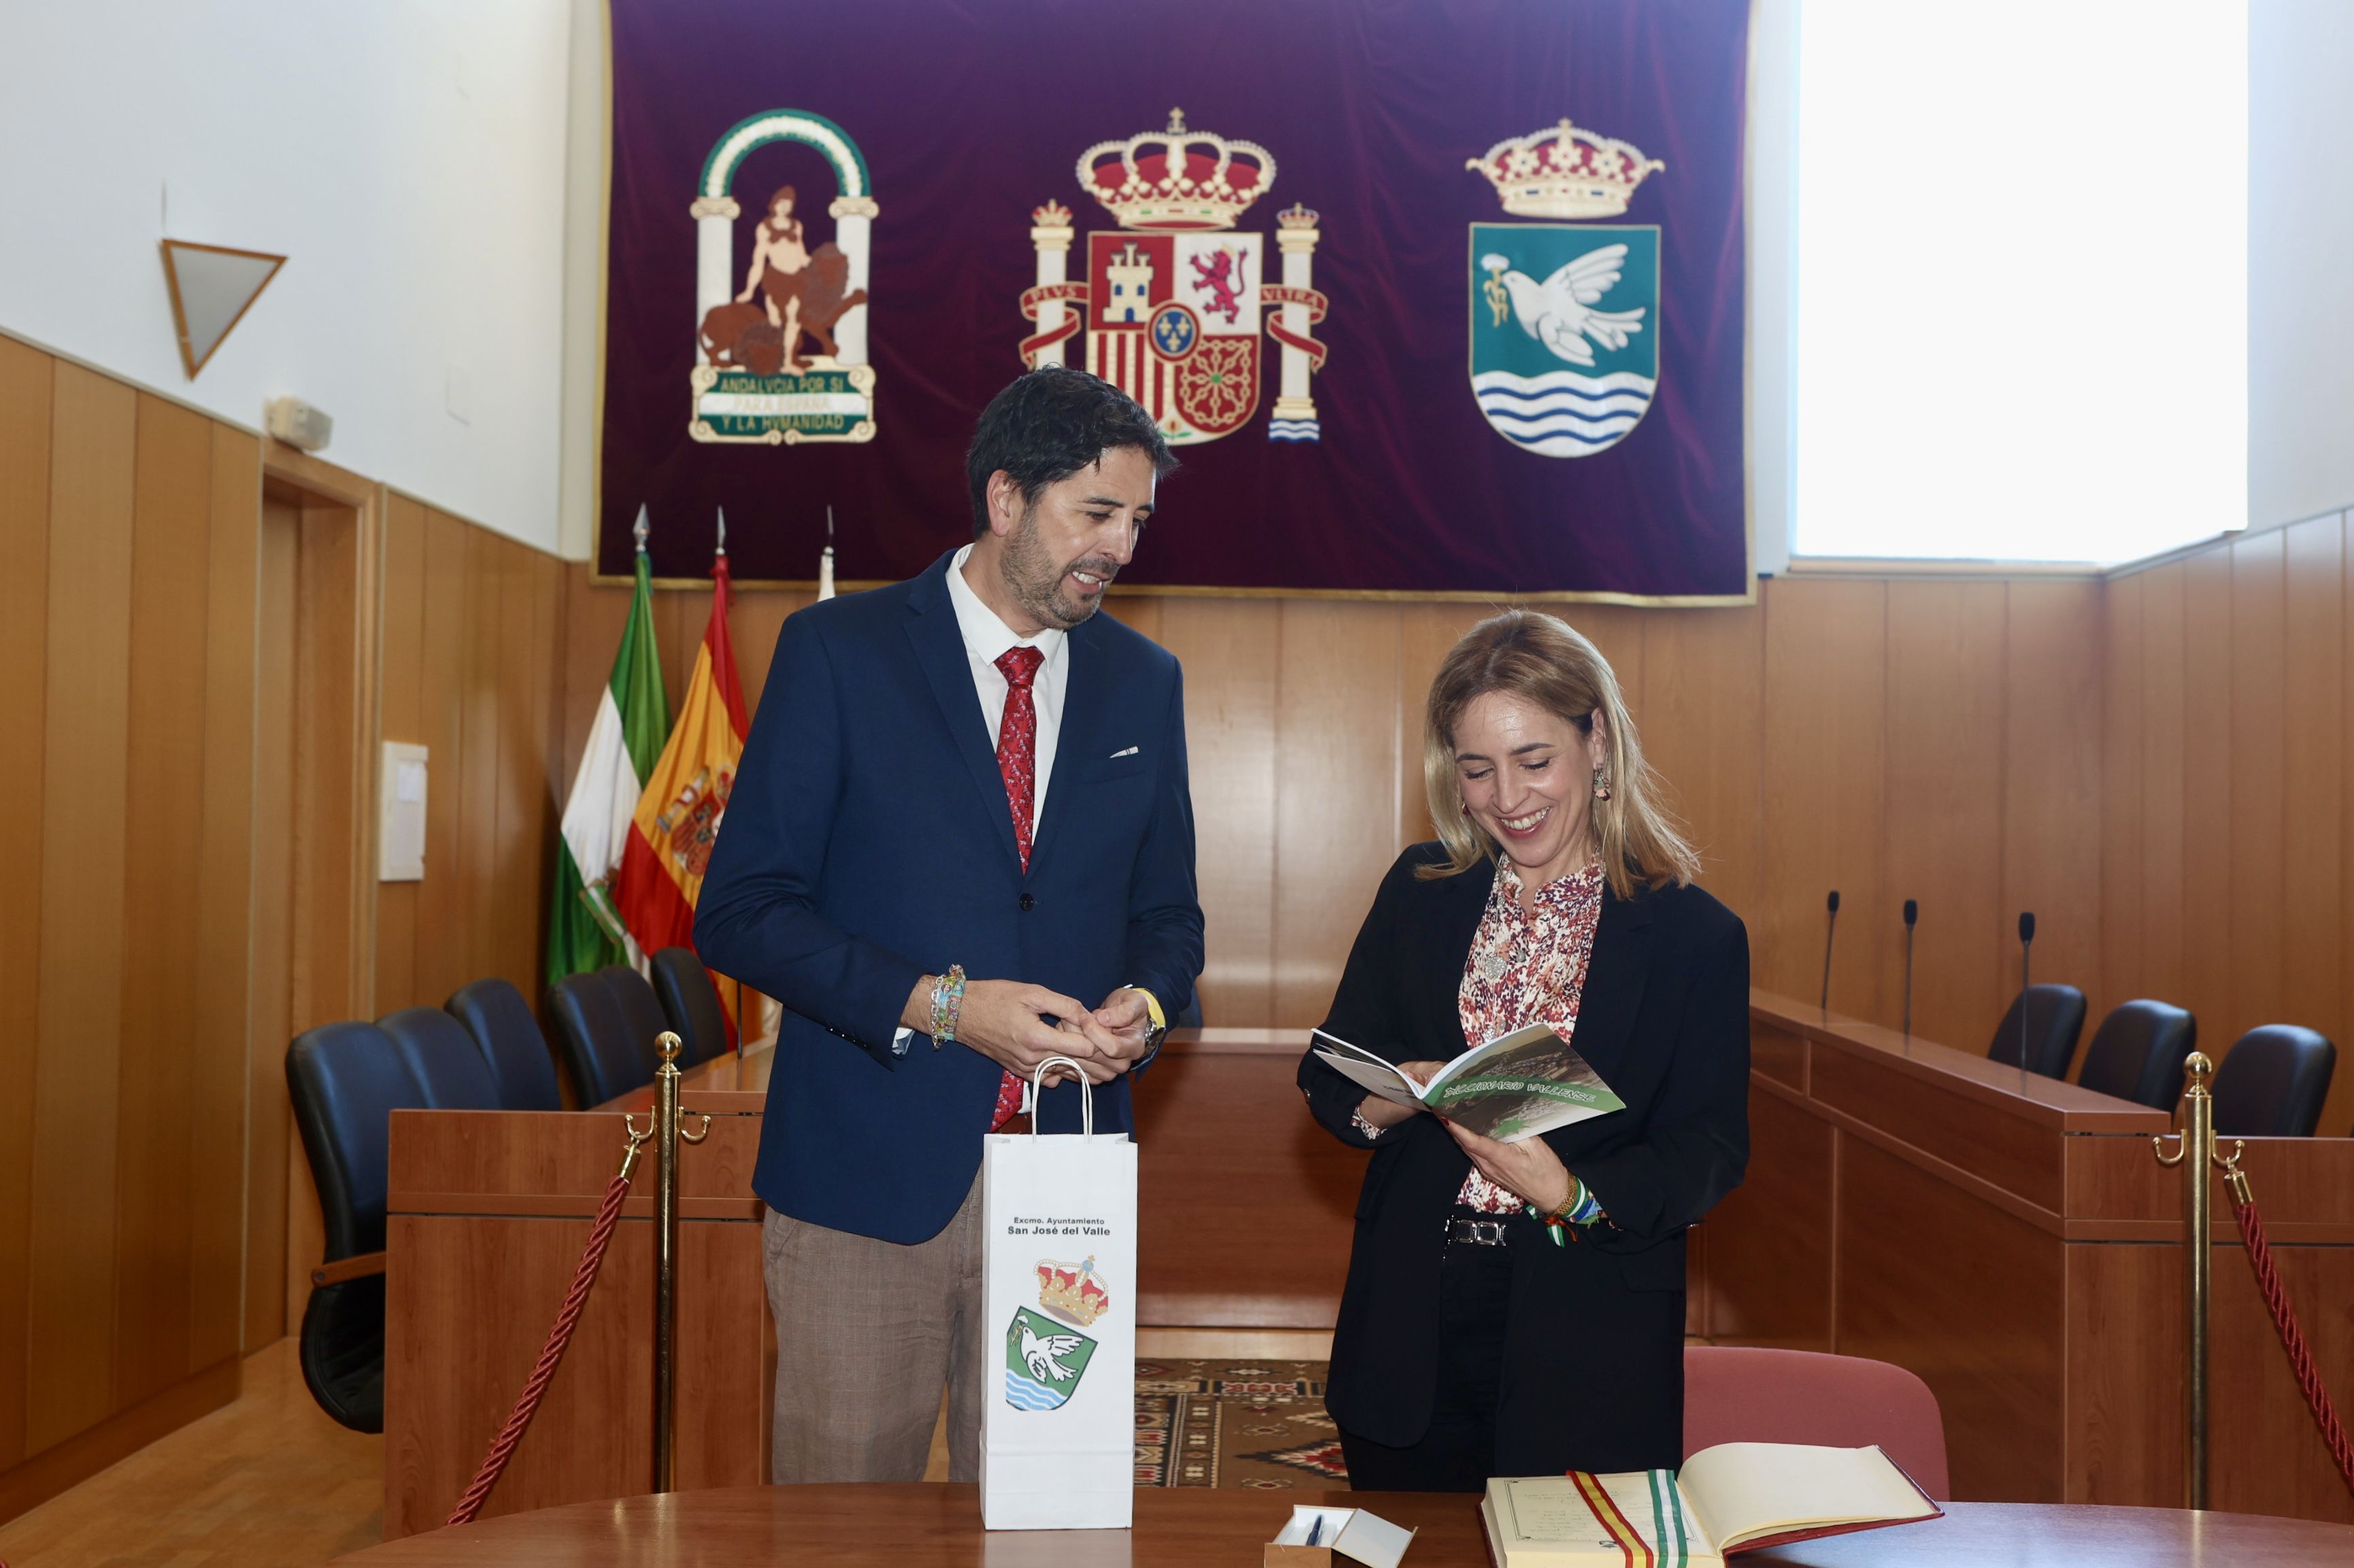 Diputación ofrece su apoyo al desarrollo económico y social de San José del Valle. Alcalde y presidenta en el intercambio de presentes.